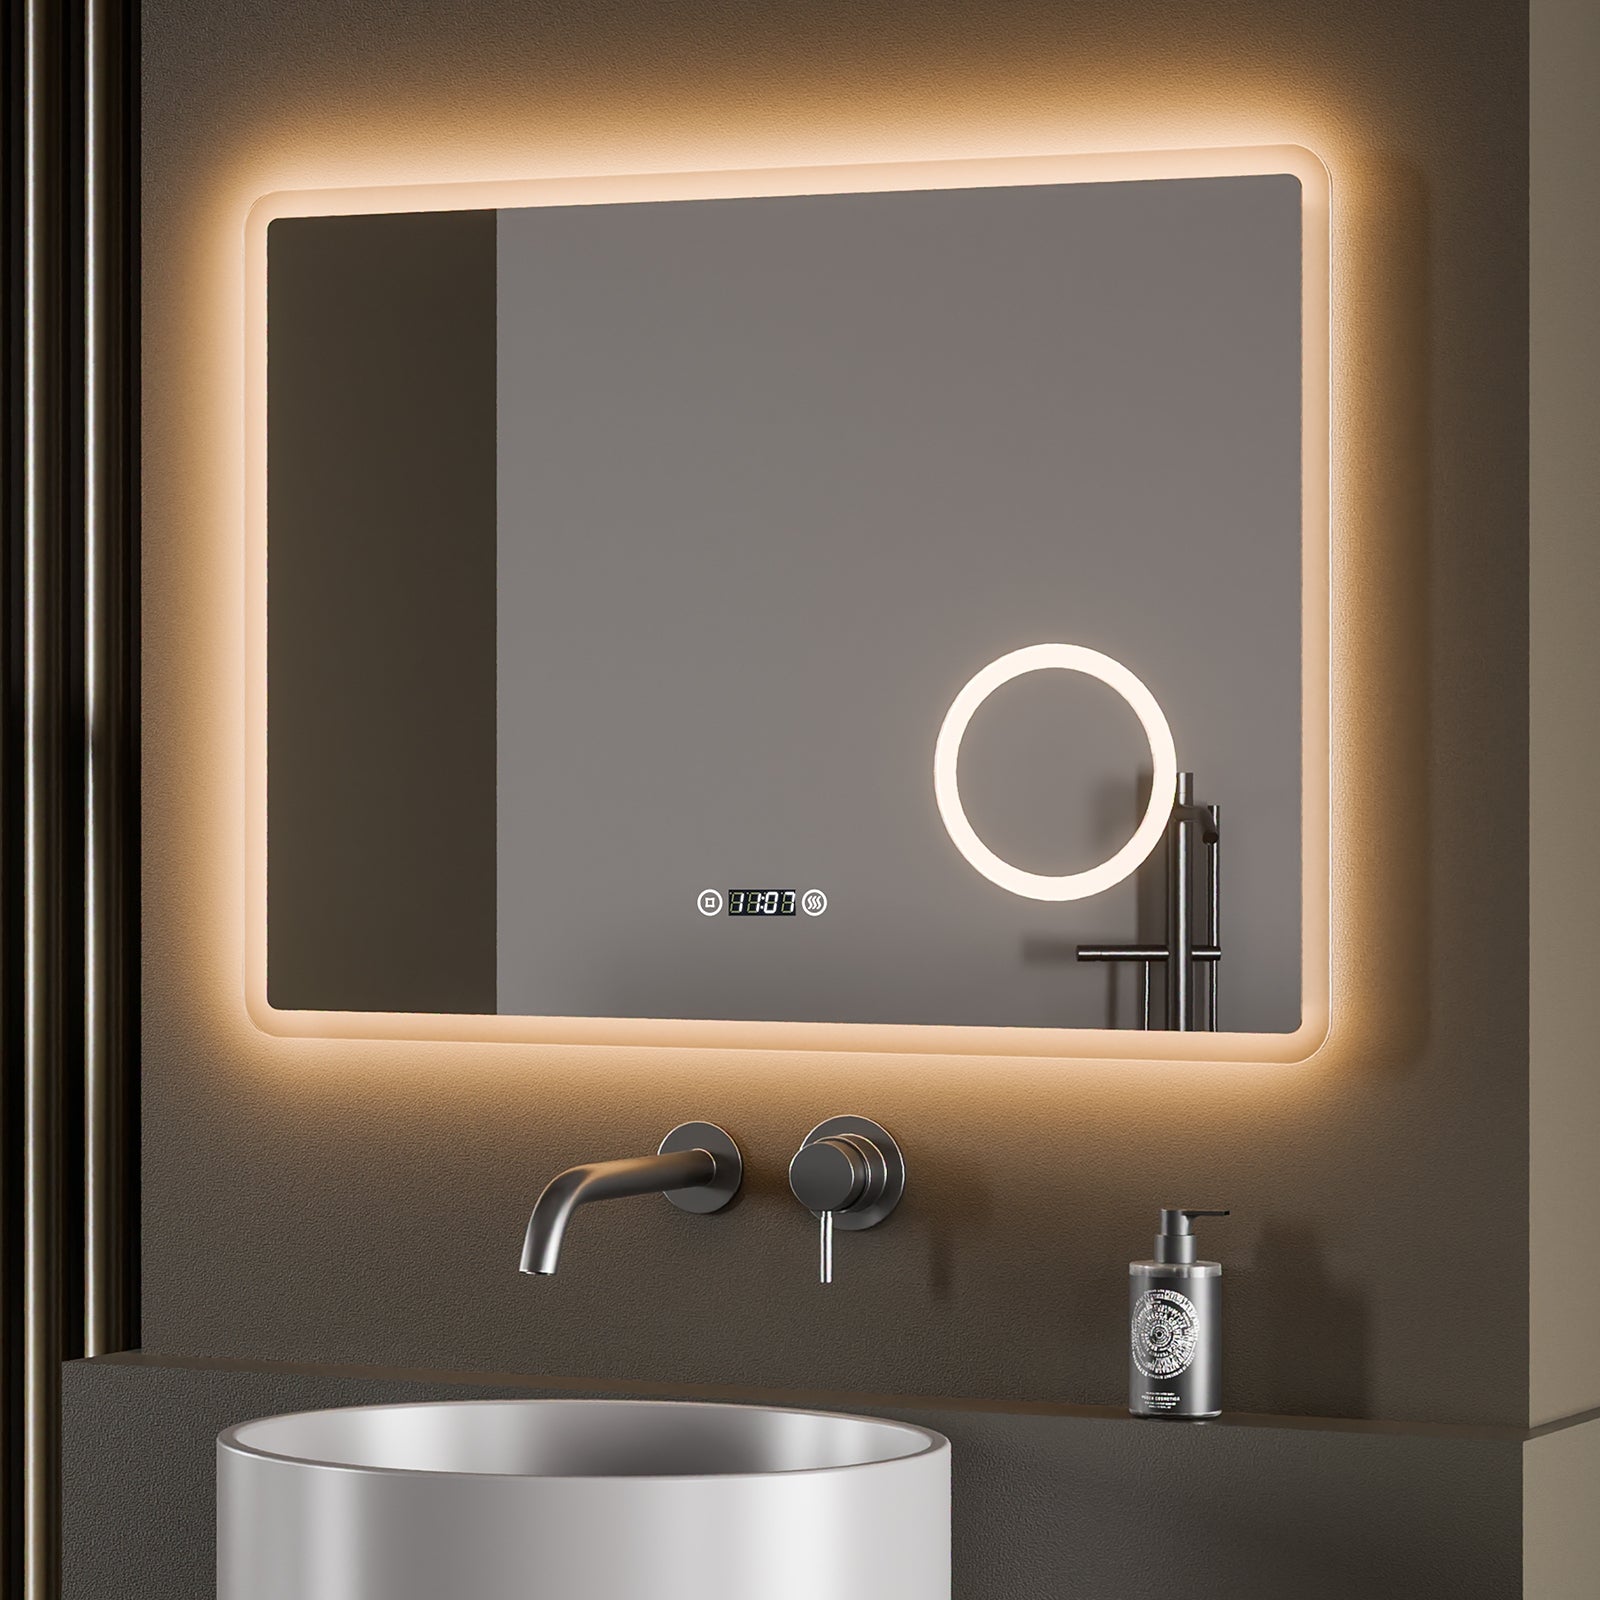 EMKE „LeeMi πX Plus“ LED Spiegel Badezimmer, Schminkspiegel, Touch, Antibeschlag, 3 Farben, Dimmung, 80 x 60 cm